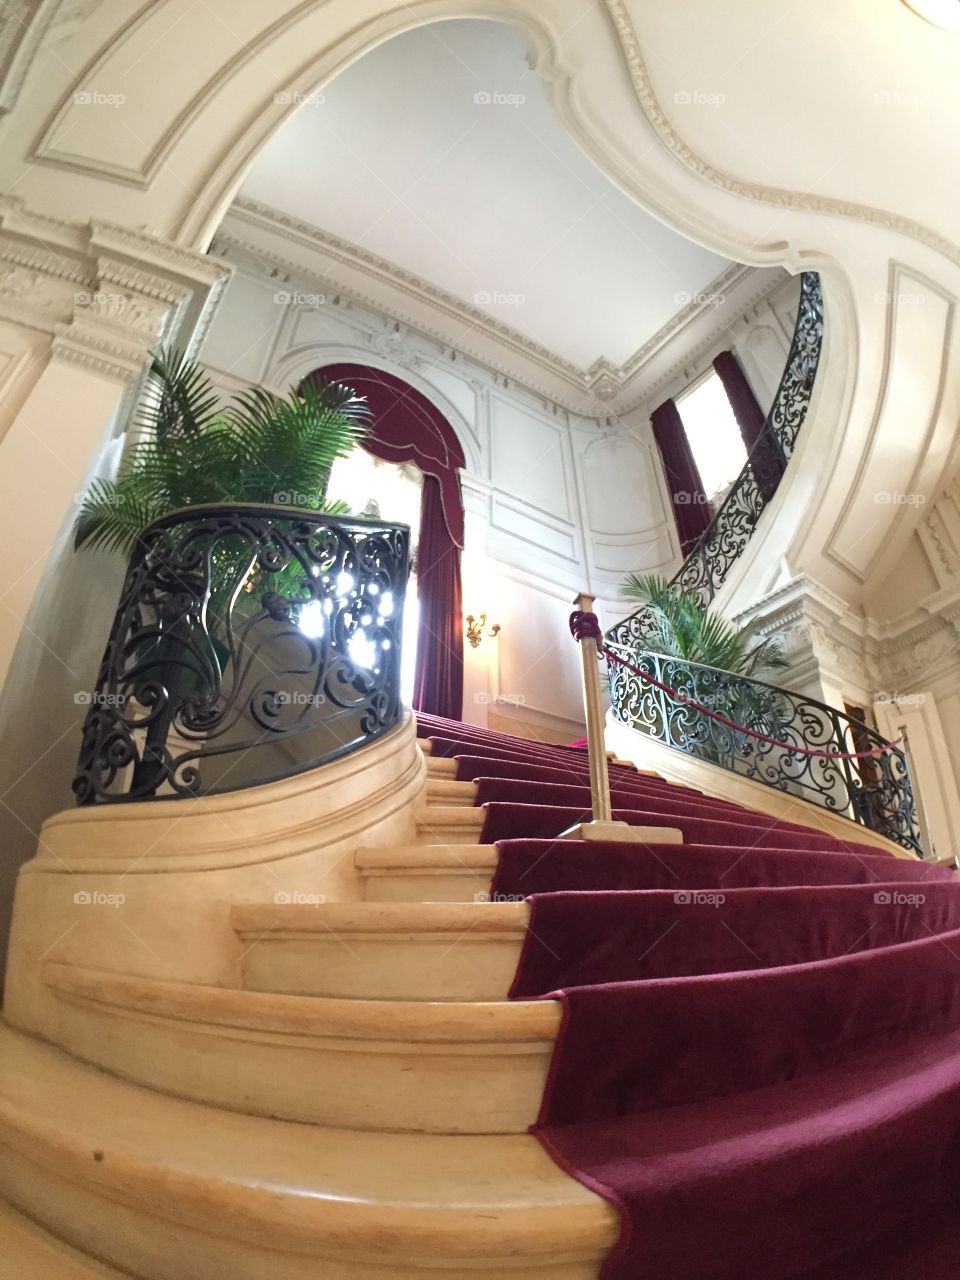 Stairwell. A mansion stairwell